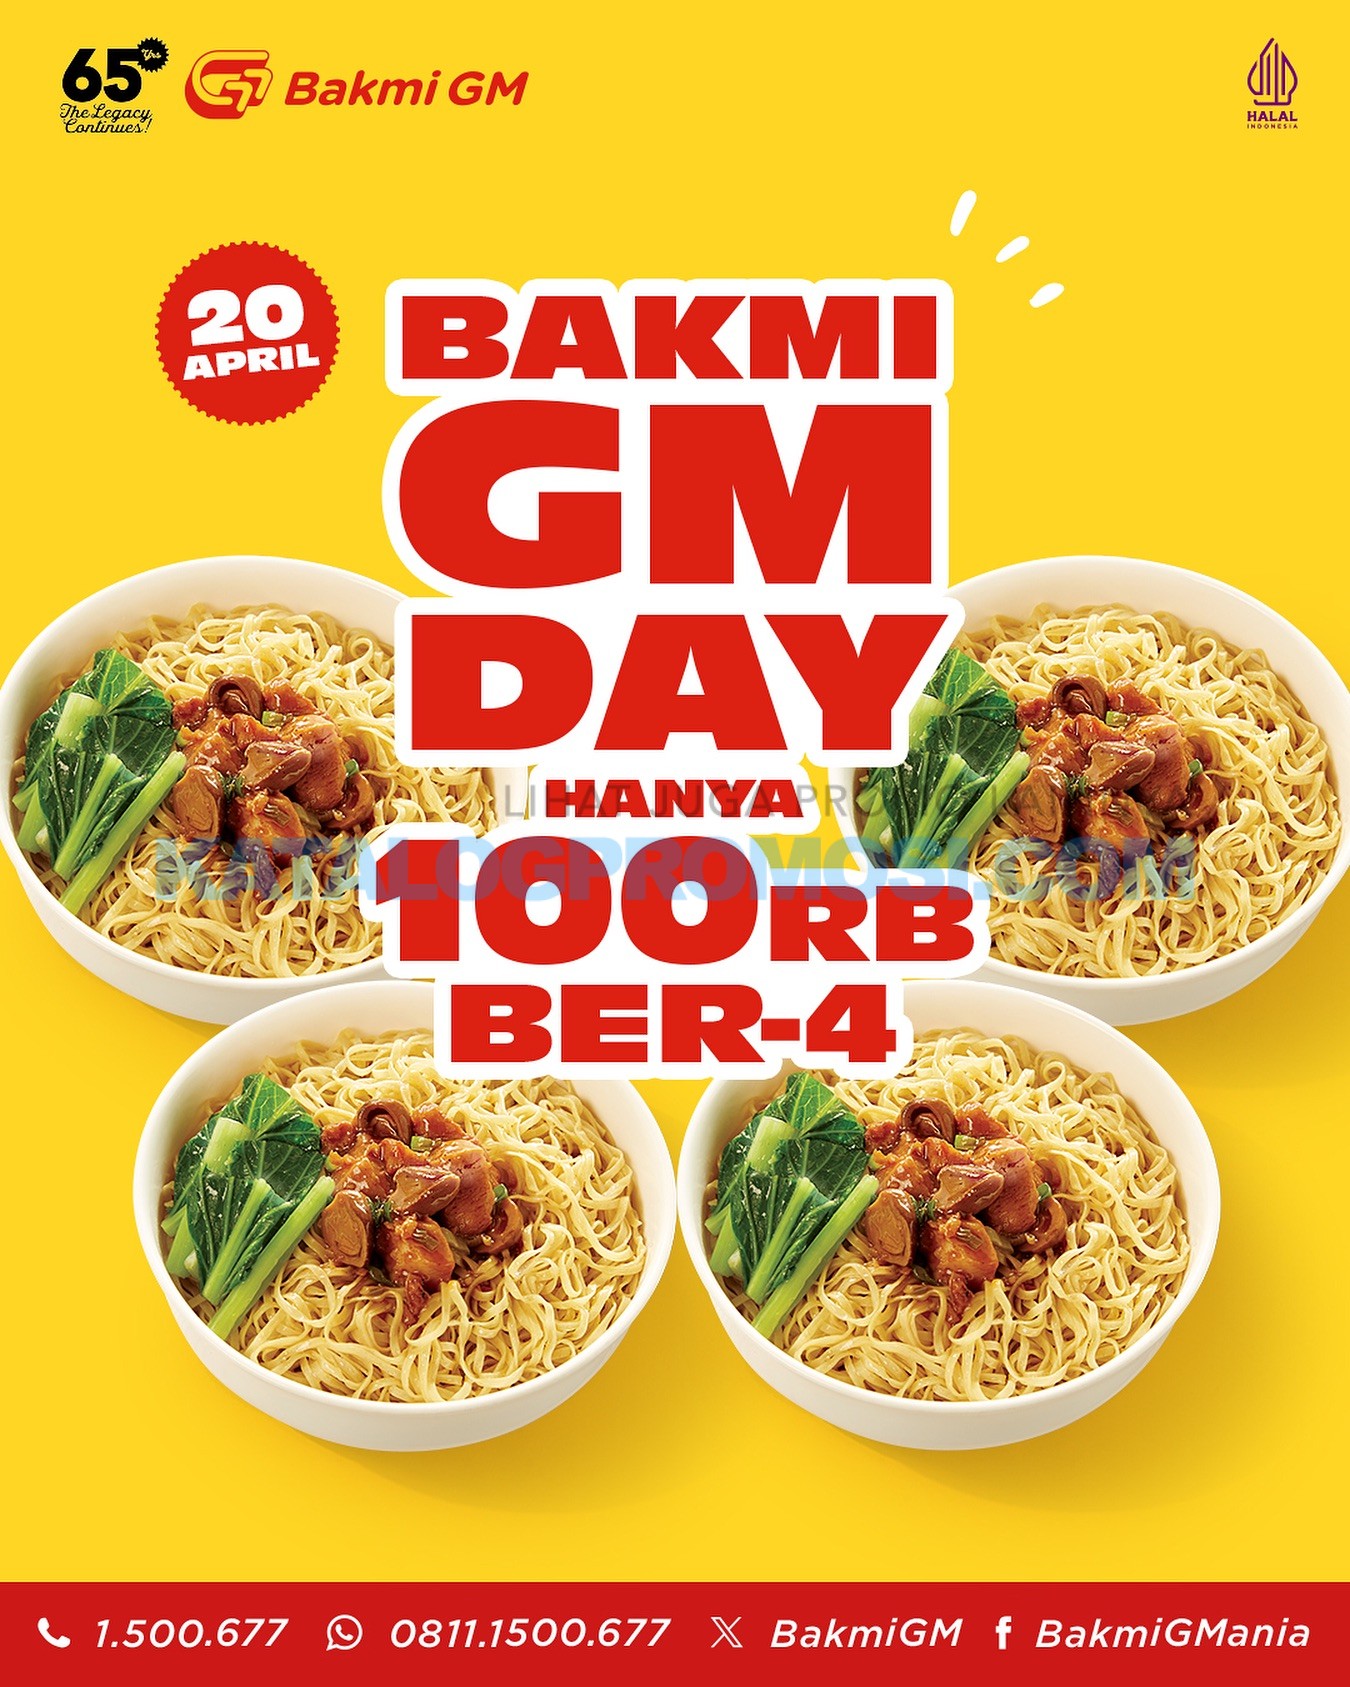 Promo BAKMI GM DAY - MAKAN HEMAT BER-4 HANYA Rp. 25RB per ORANG